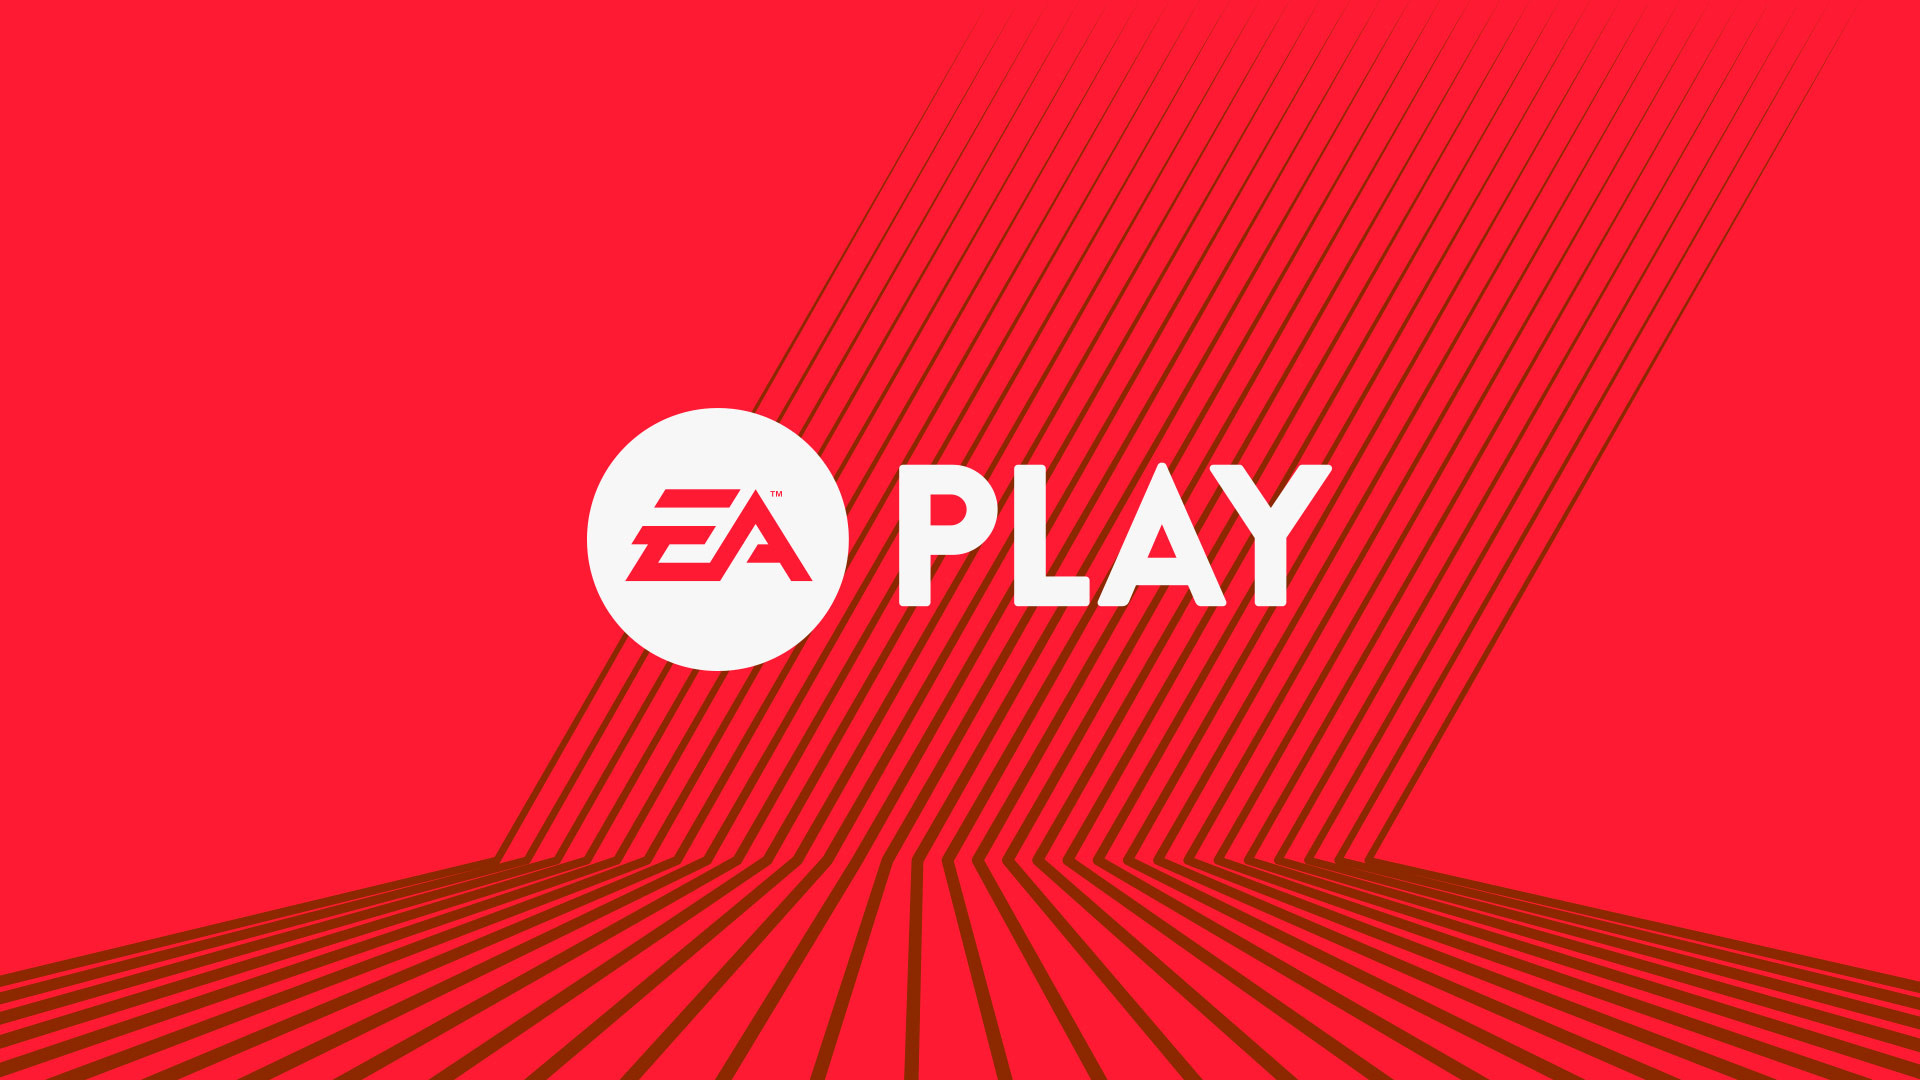 Новость Три месяца подписки EA Play по цене одного до 8 февраля